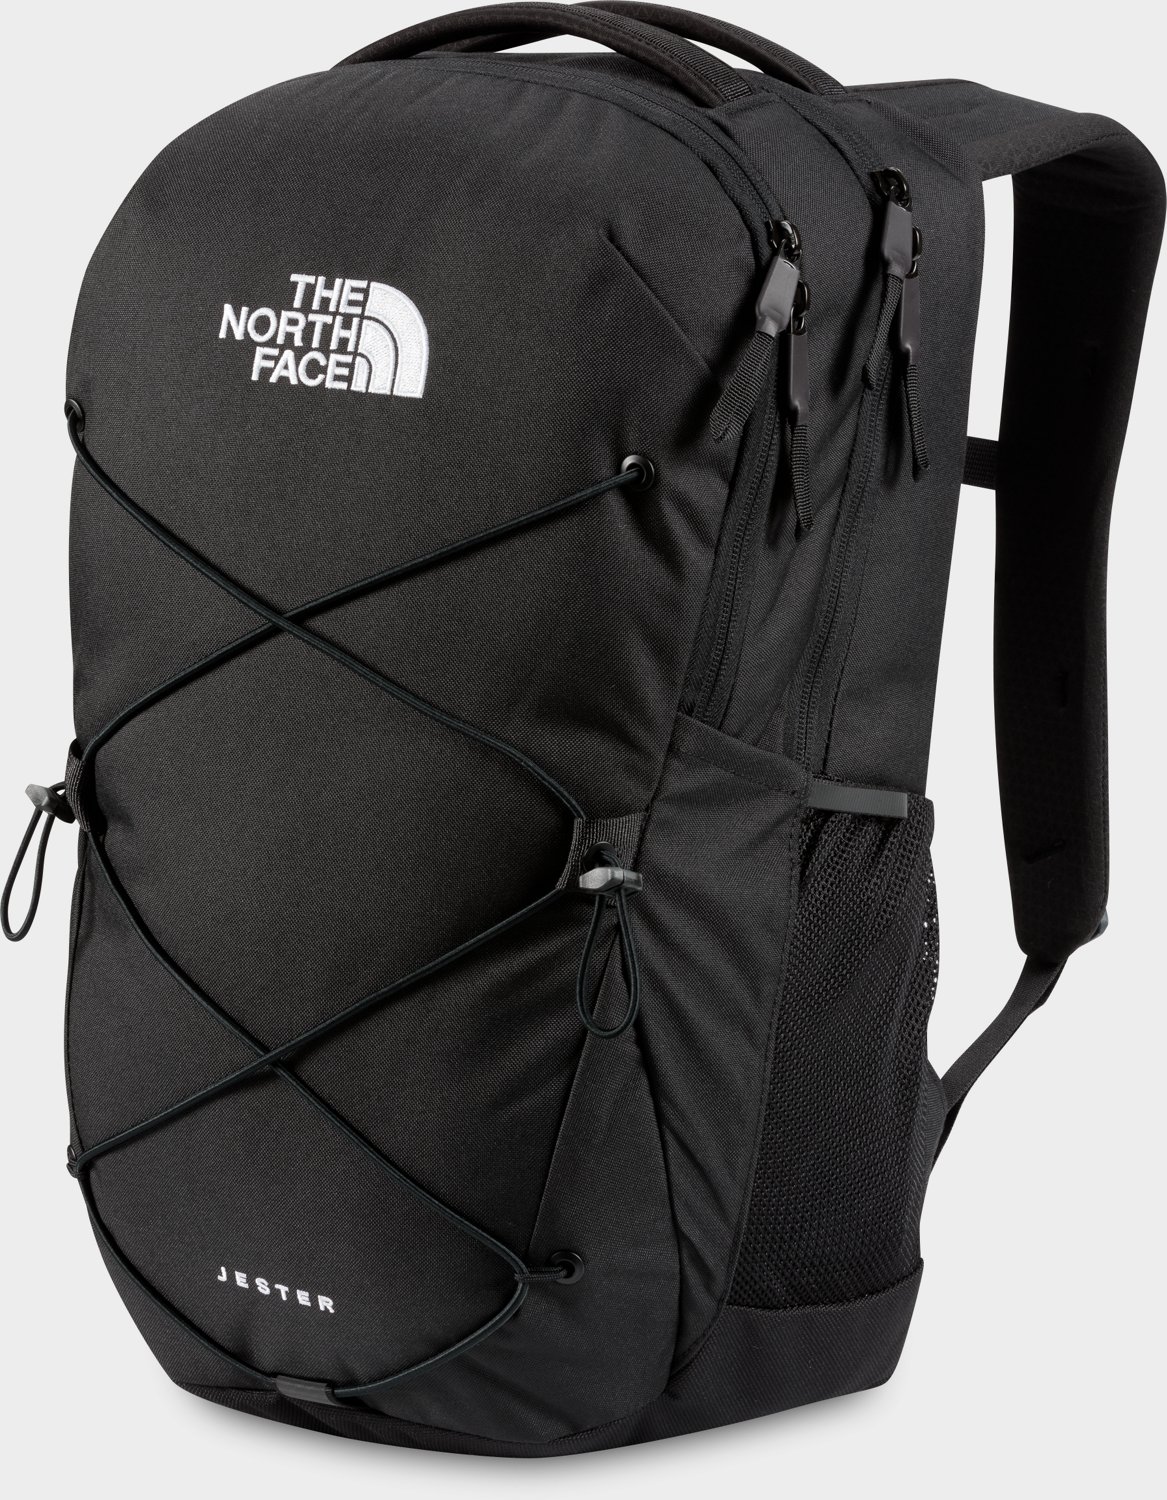 Pech Gecomprimeerd doorgaan The North Face Jester Backpack | Academy